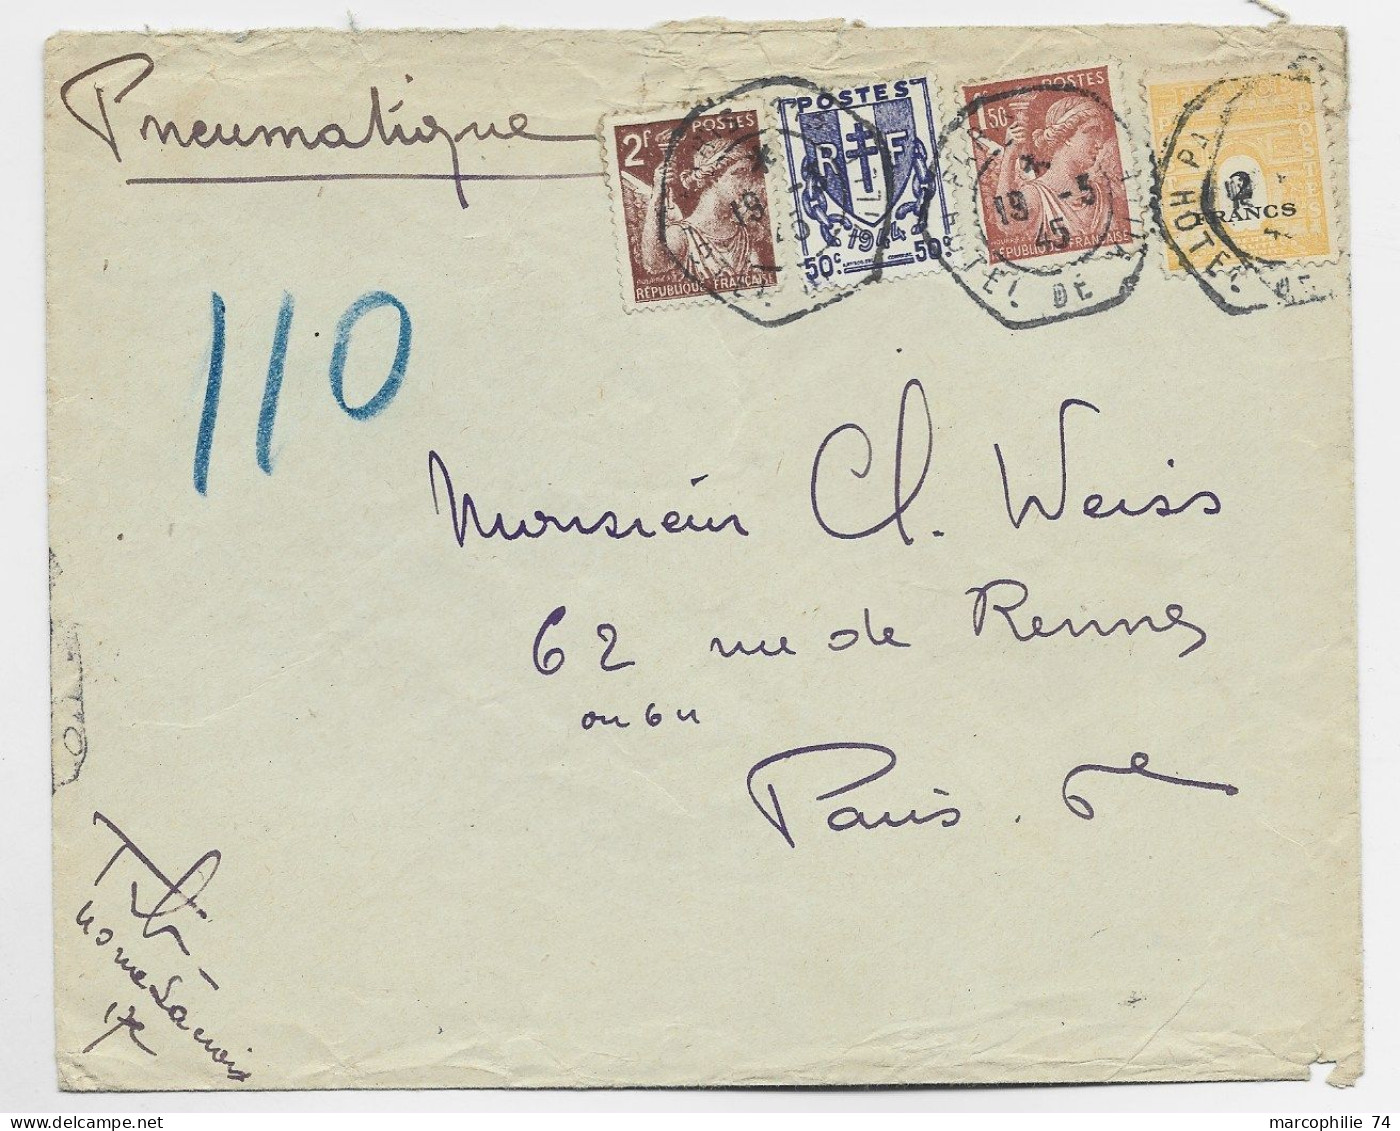 FRANCE ARC TRIOMPHE 2FR+ CHAINE 50C + 2FR+1FR50  PNEUMATIQUE C. HEX PARIS 19.3.1945 HOTEL DE VILLE AU TARIF - 1944-45 Triomfboog